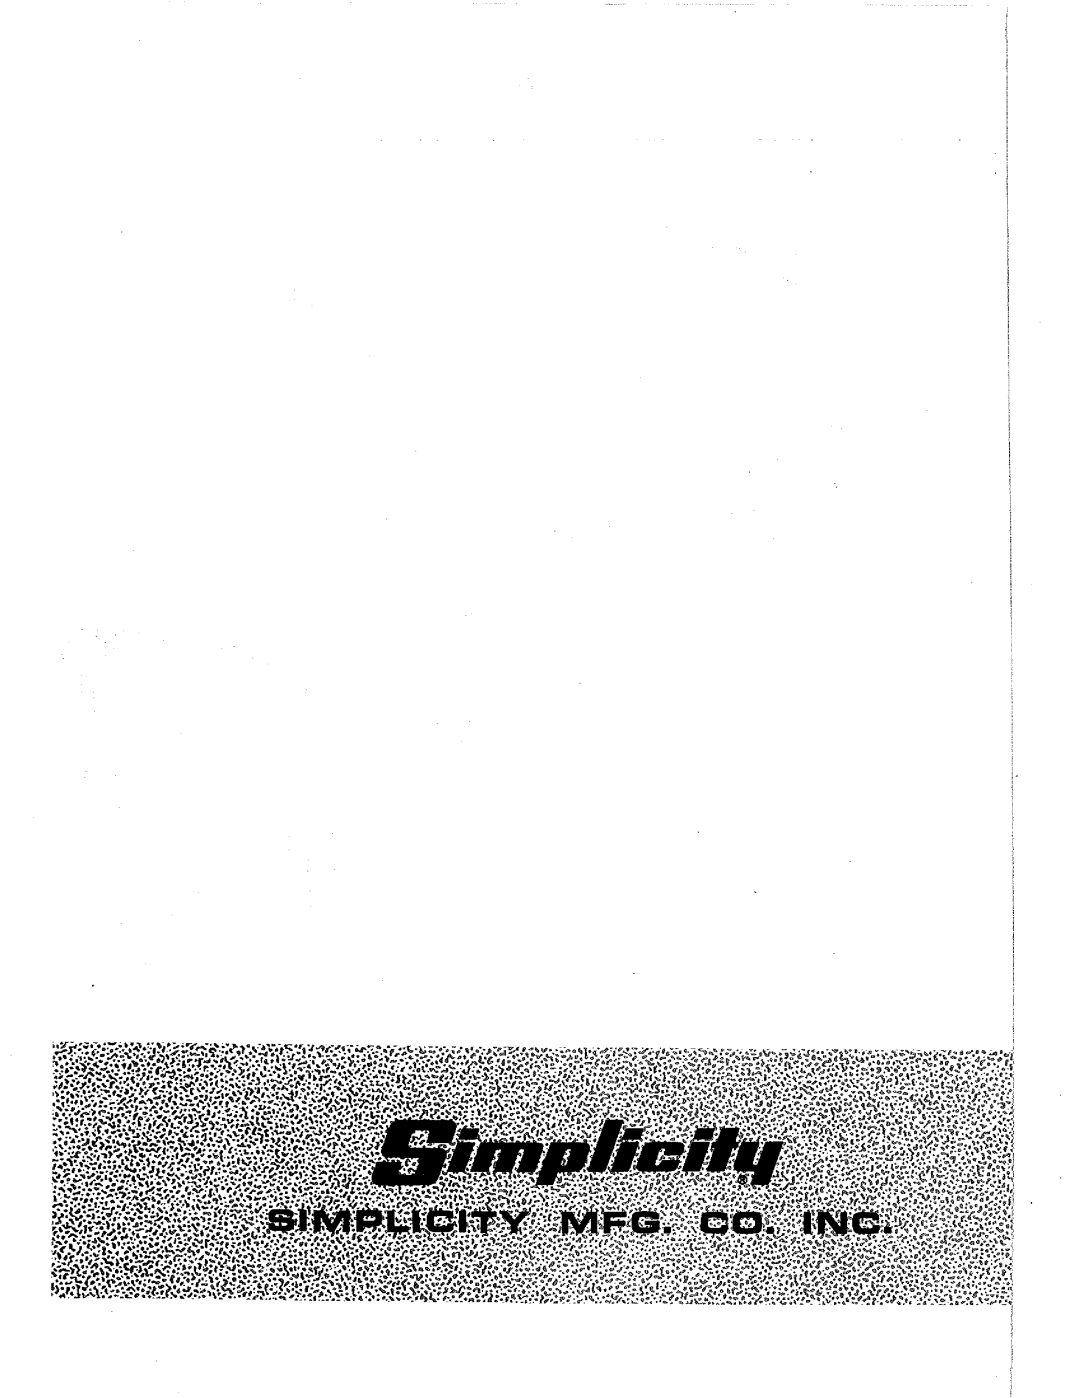 Simplicity 2025074, 990870 manual 